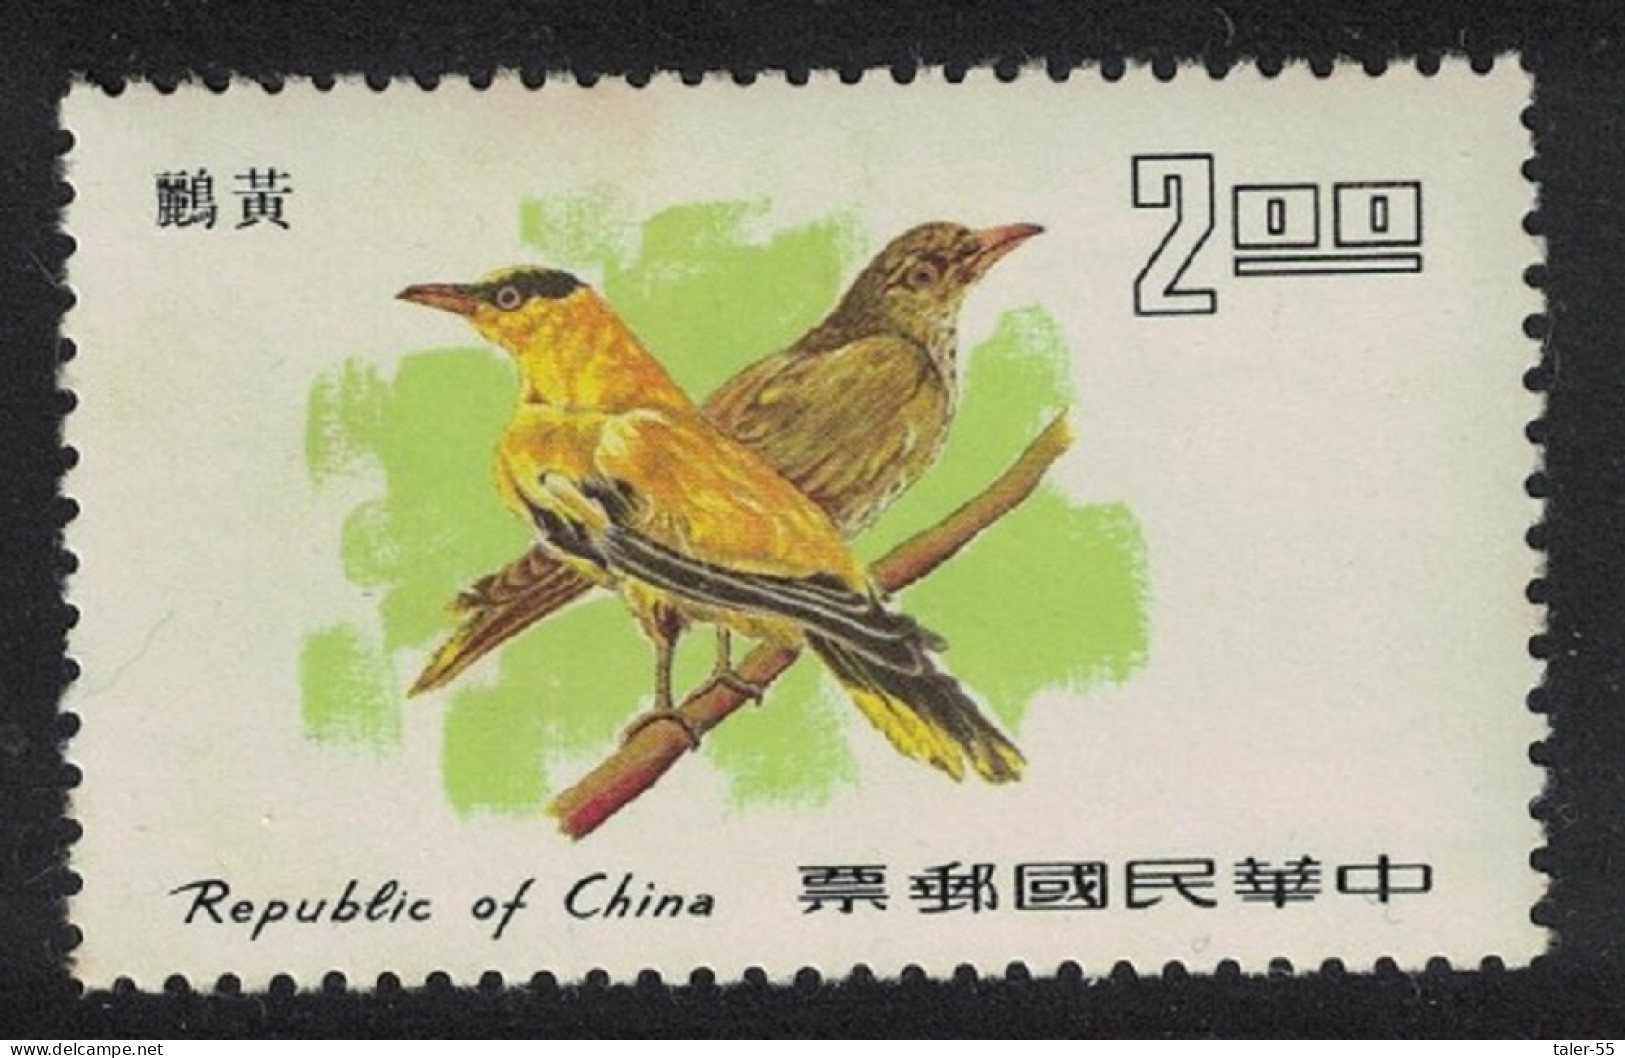 Taiwan Black-naped Orioles Birds $2 Def 1977 SG#1134 - Nuevos